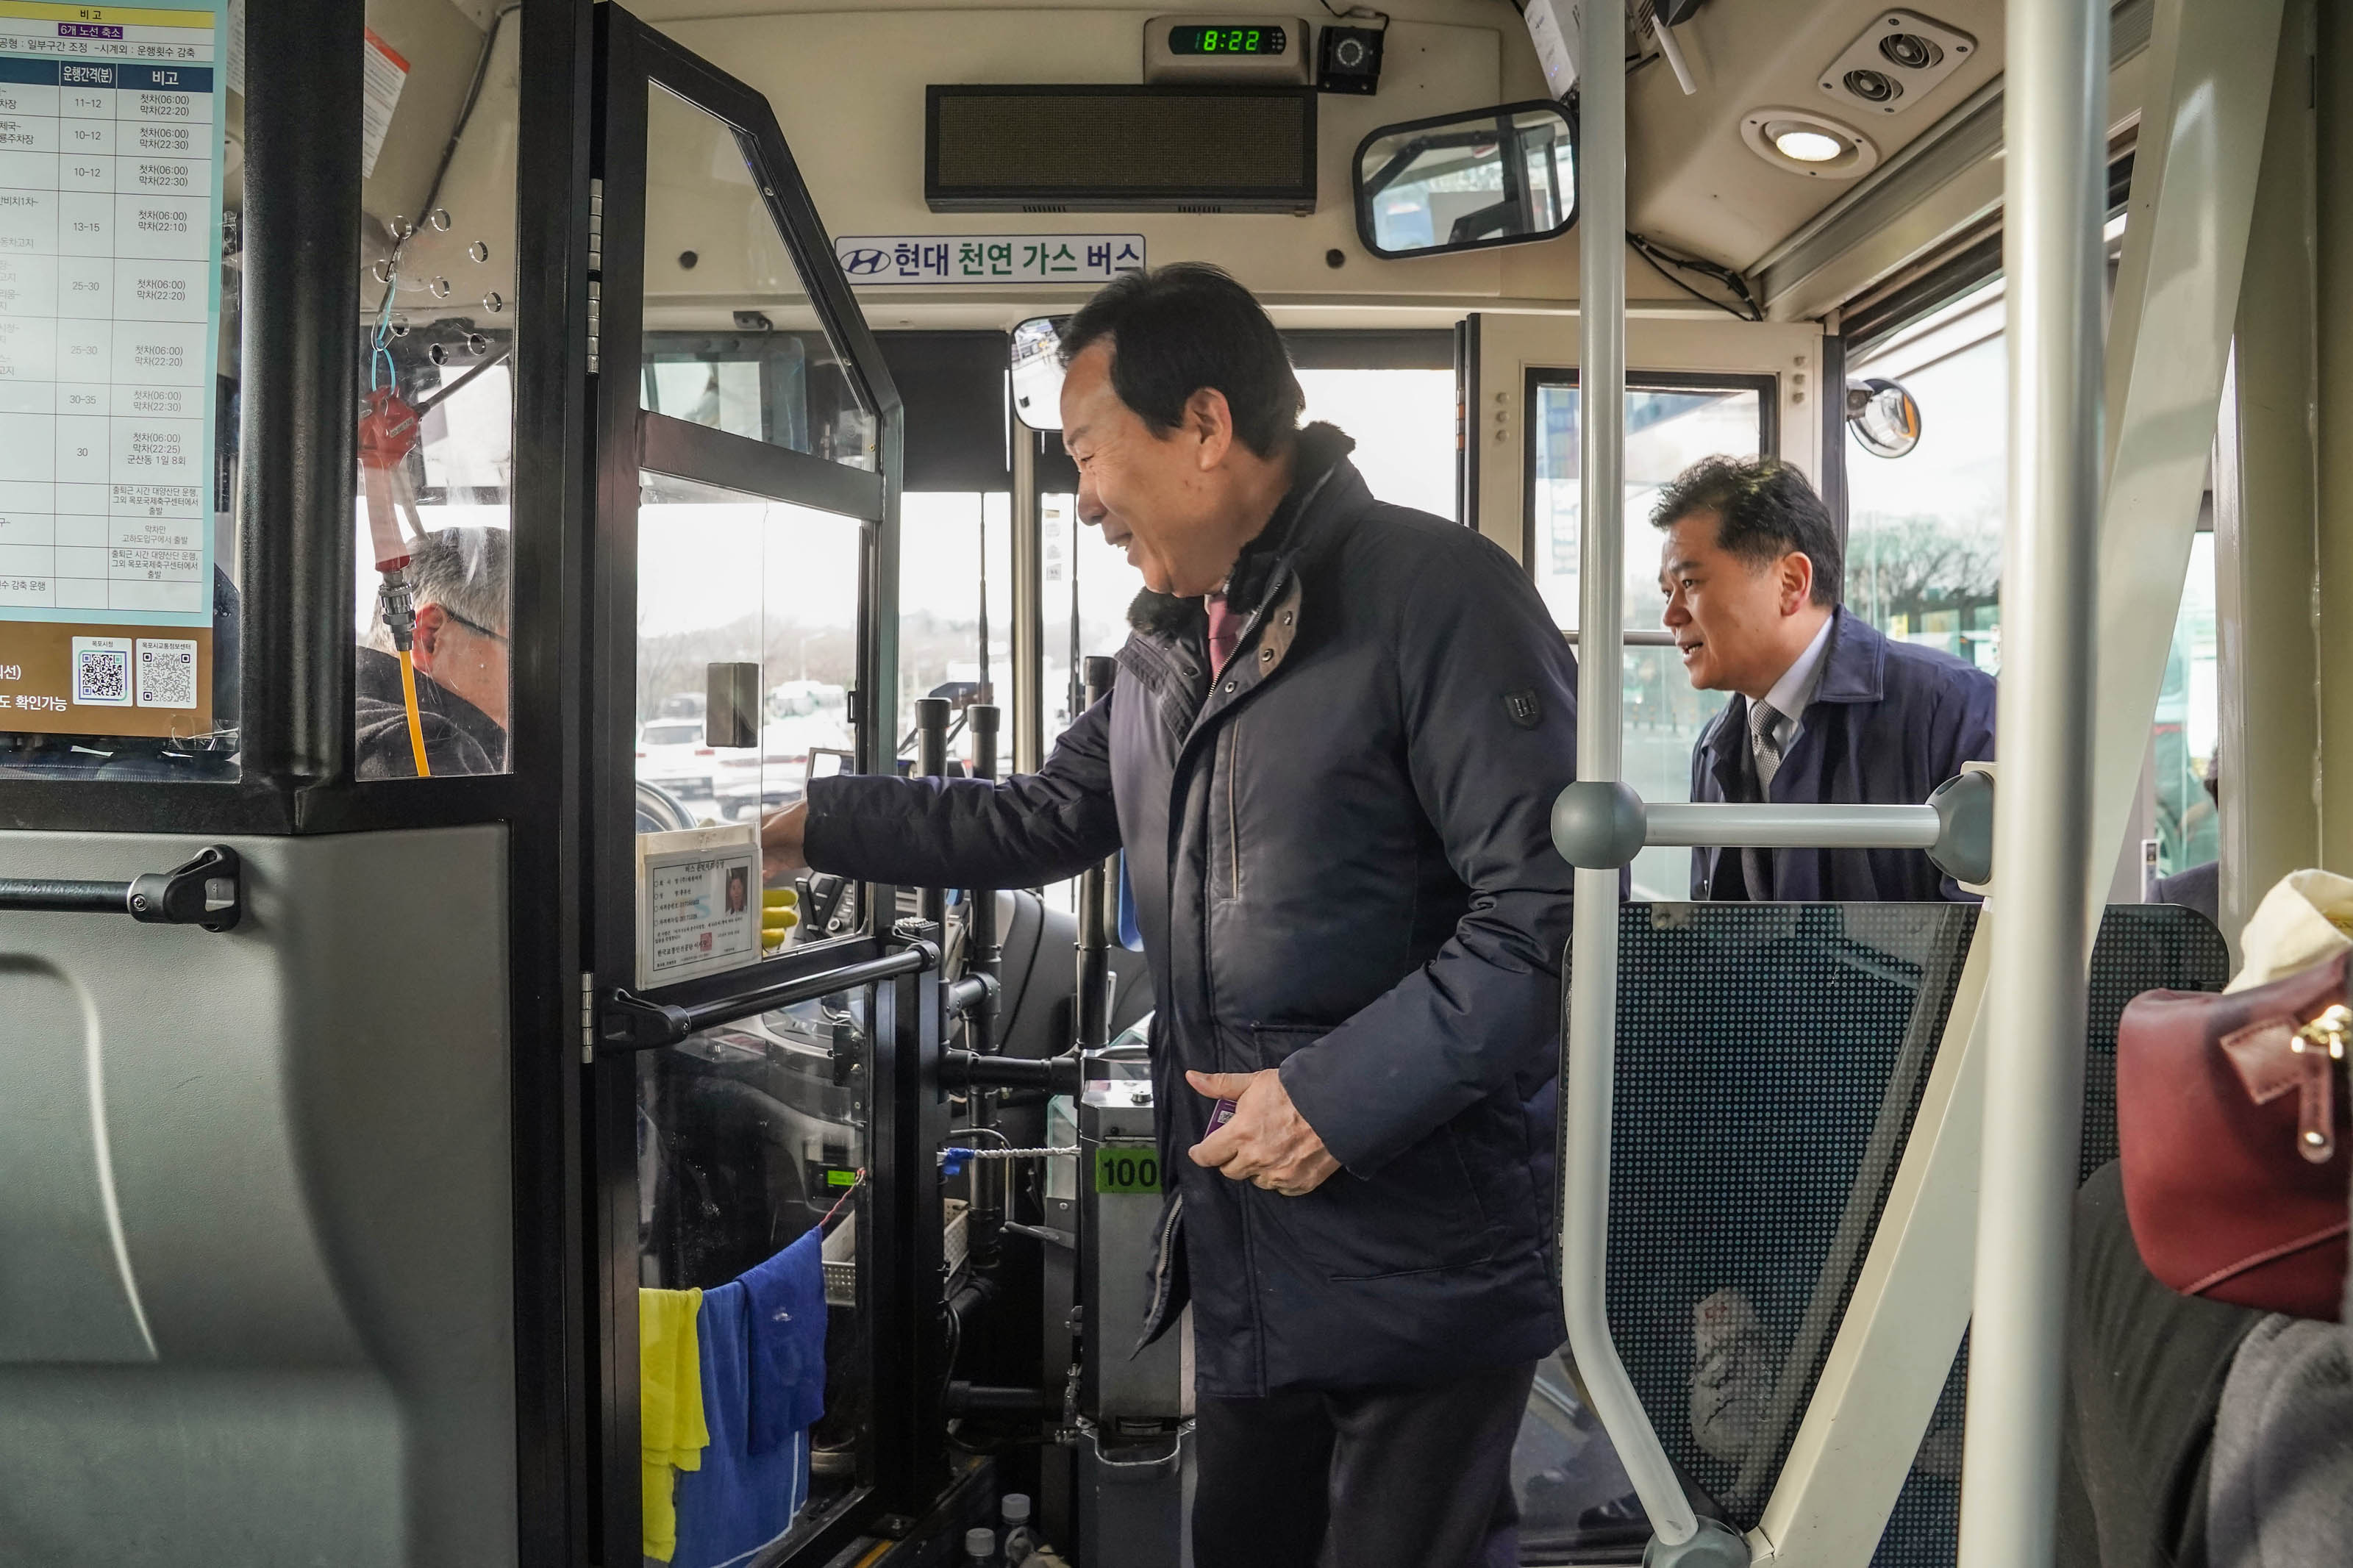 시내버스를 오르며 버스 기사님과 악수를 하며 인사하는 박홍률 시장의 모습. 그 뒤로 의원으로 보이는 남성이 뒤따라 올라타고 있다.